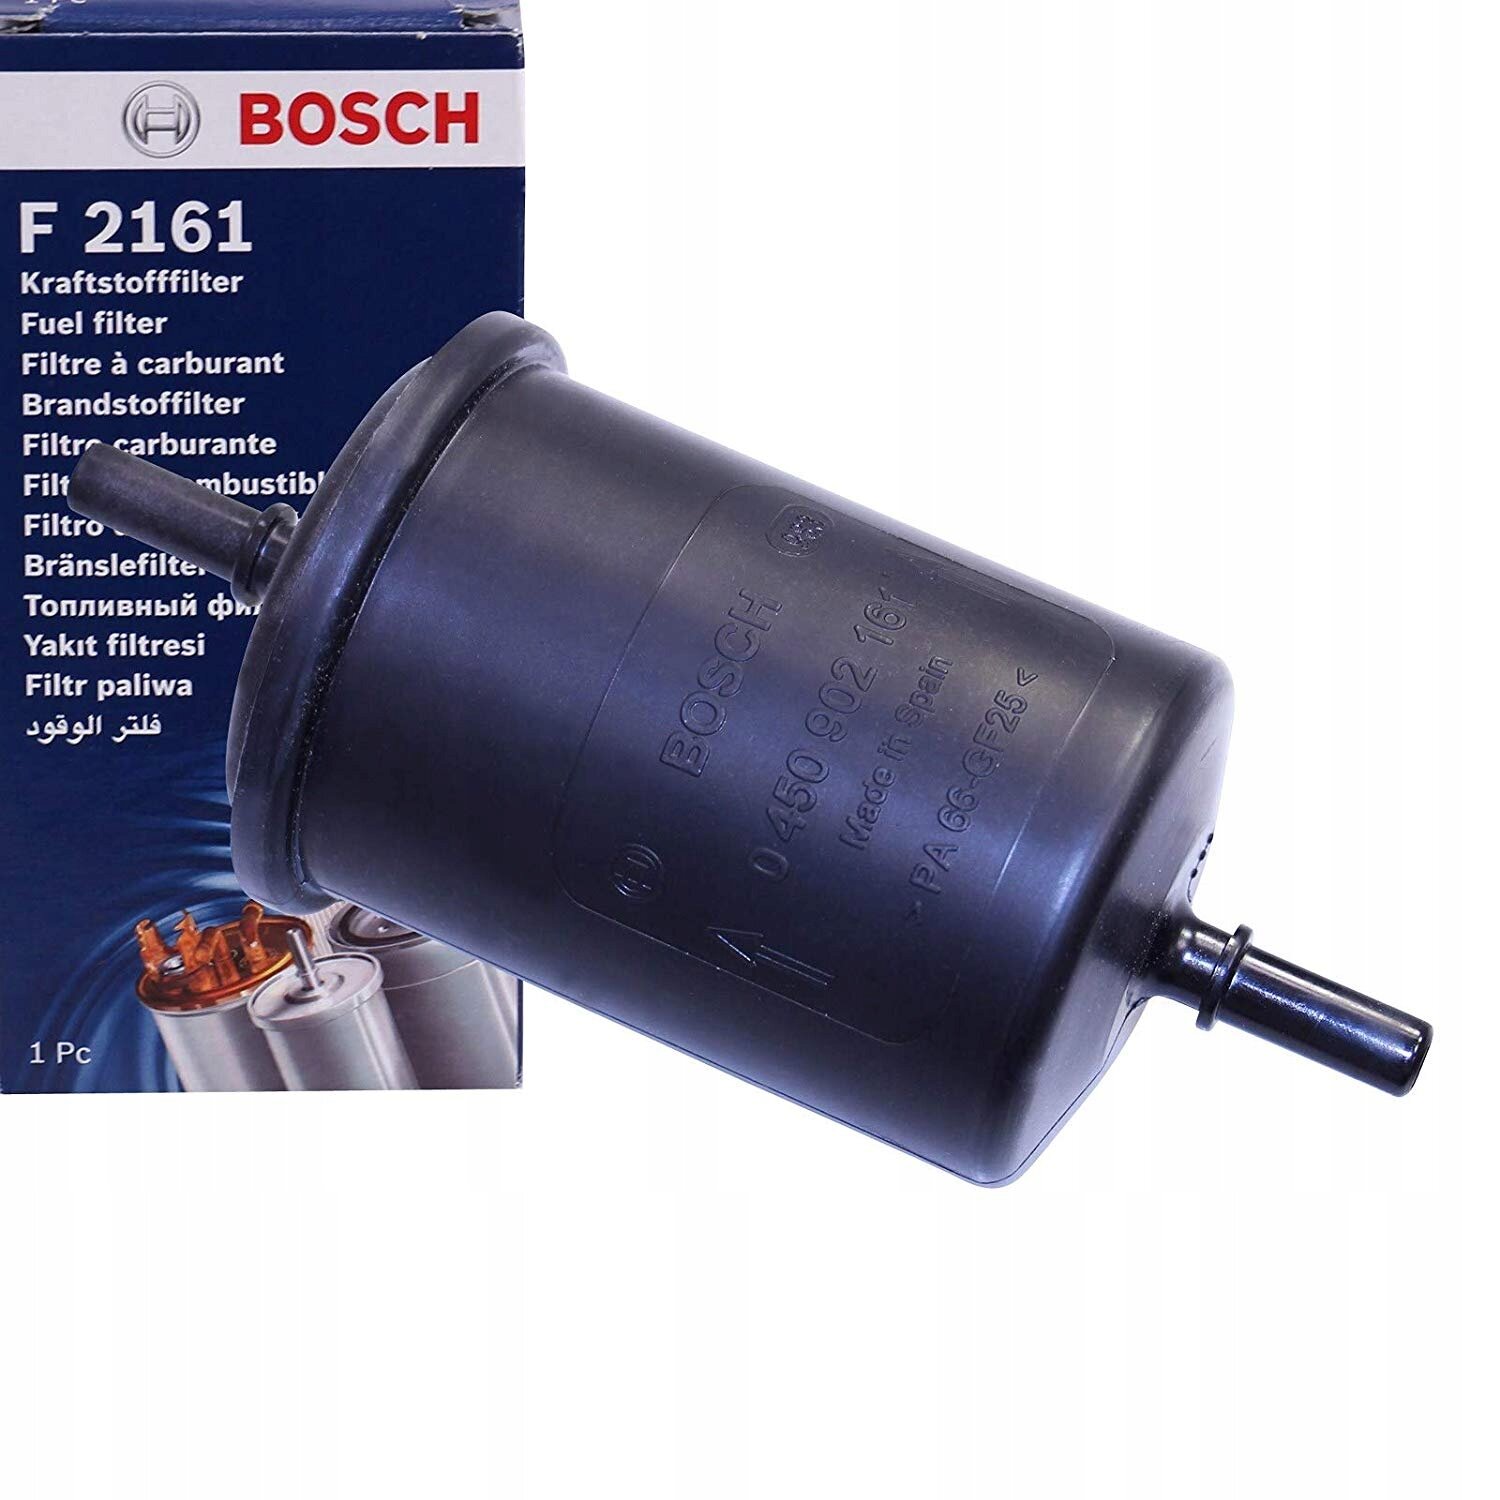 Фильтр топливный для Ситроен С4 Б7 2010-2013 год выпуска (Citroen C4 B7) BOSCH 0 450 902 161